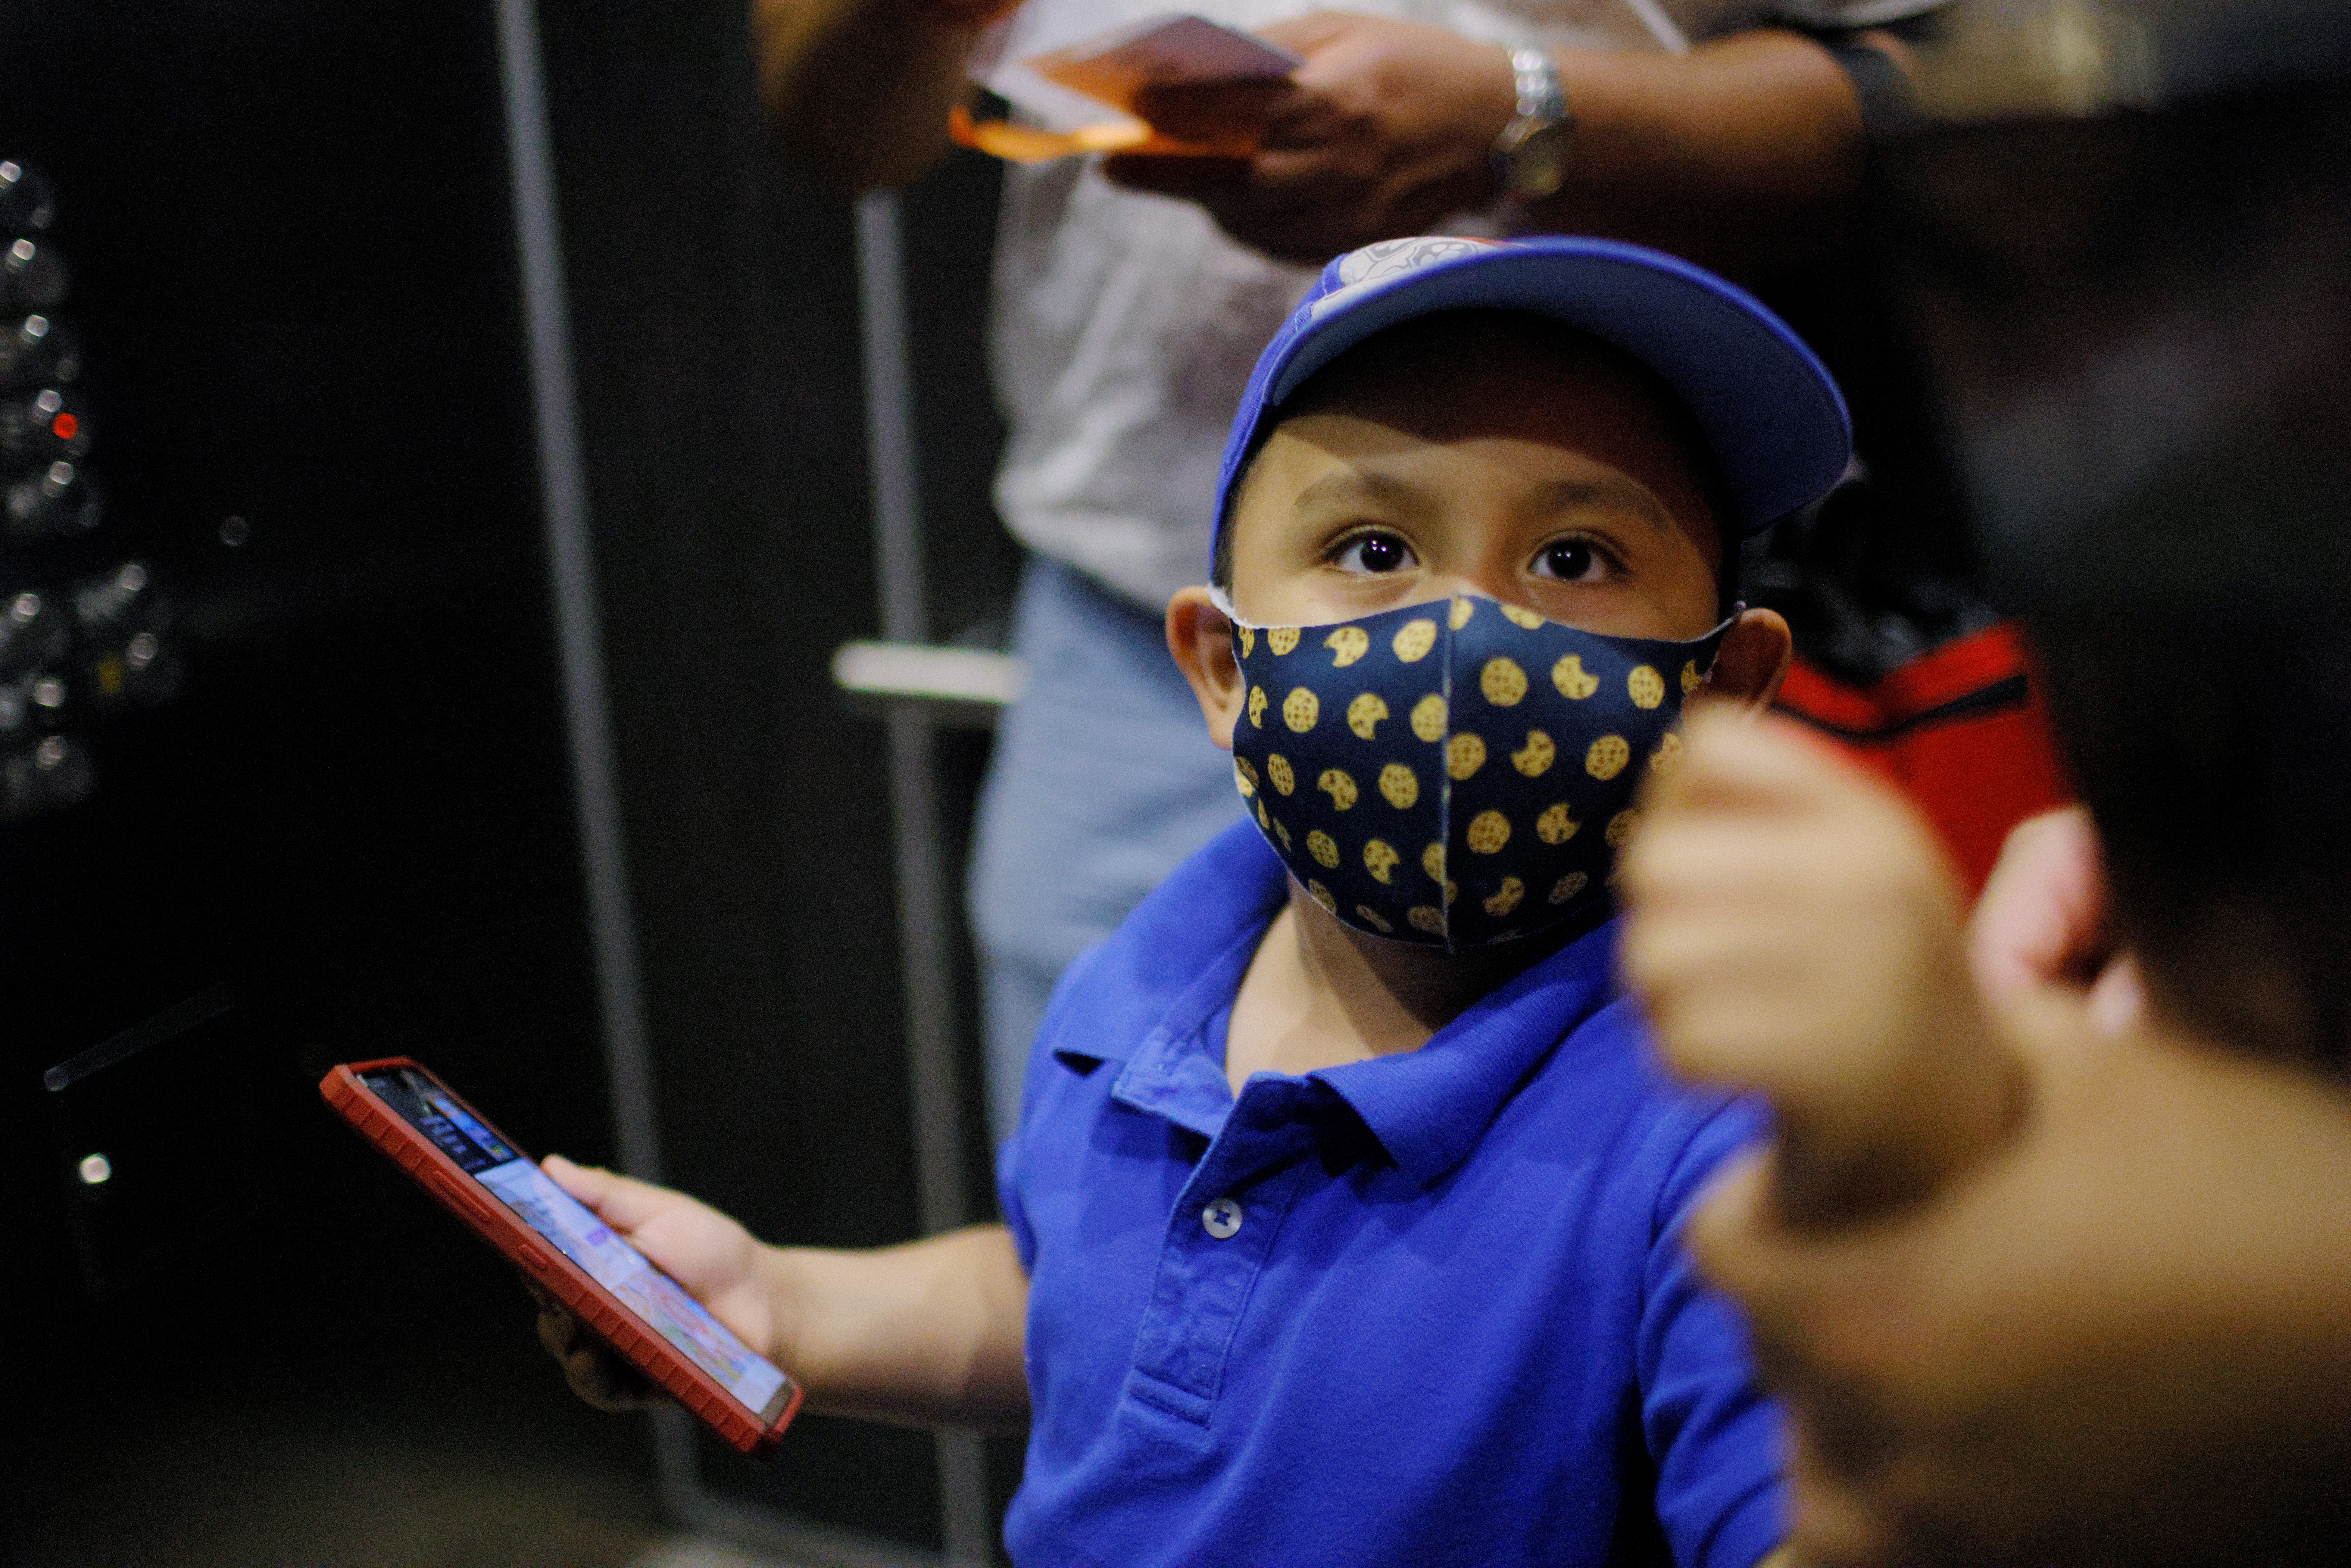 Los niños se exponen a una “catástrofe generacional” debido a la pandemia